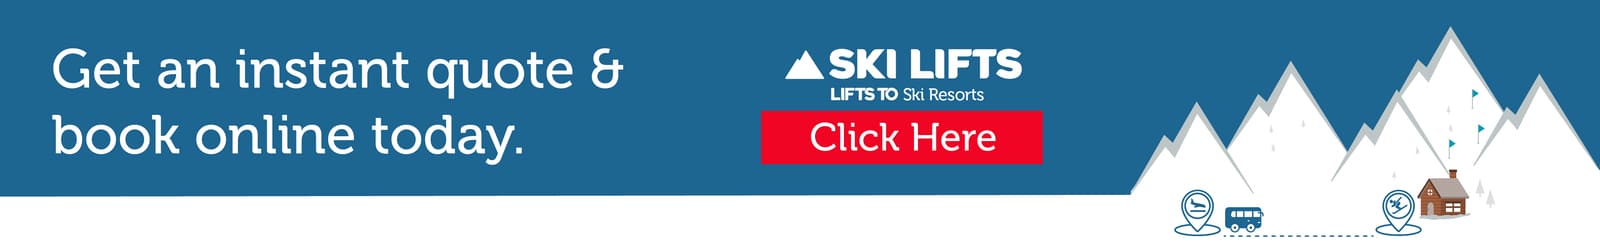 Obtenez un devis de transfert de ski auprès des remontées mécaniques